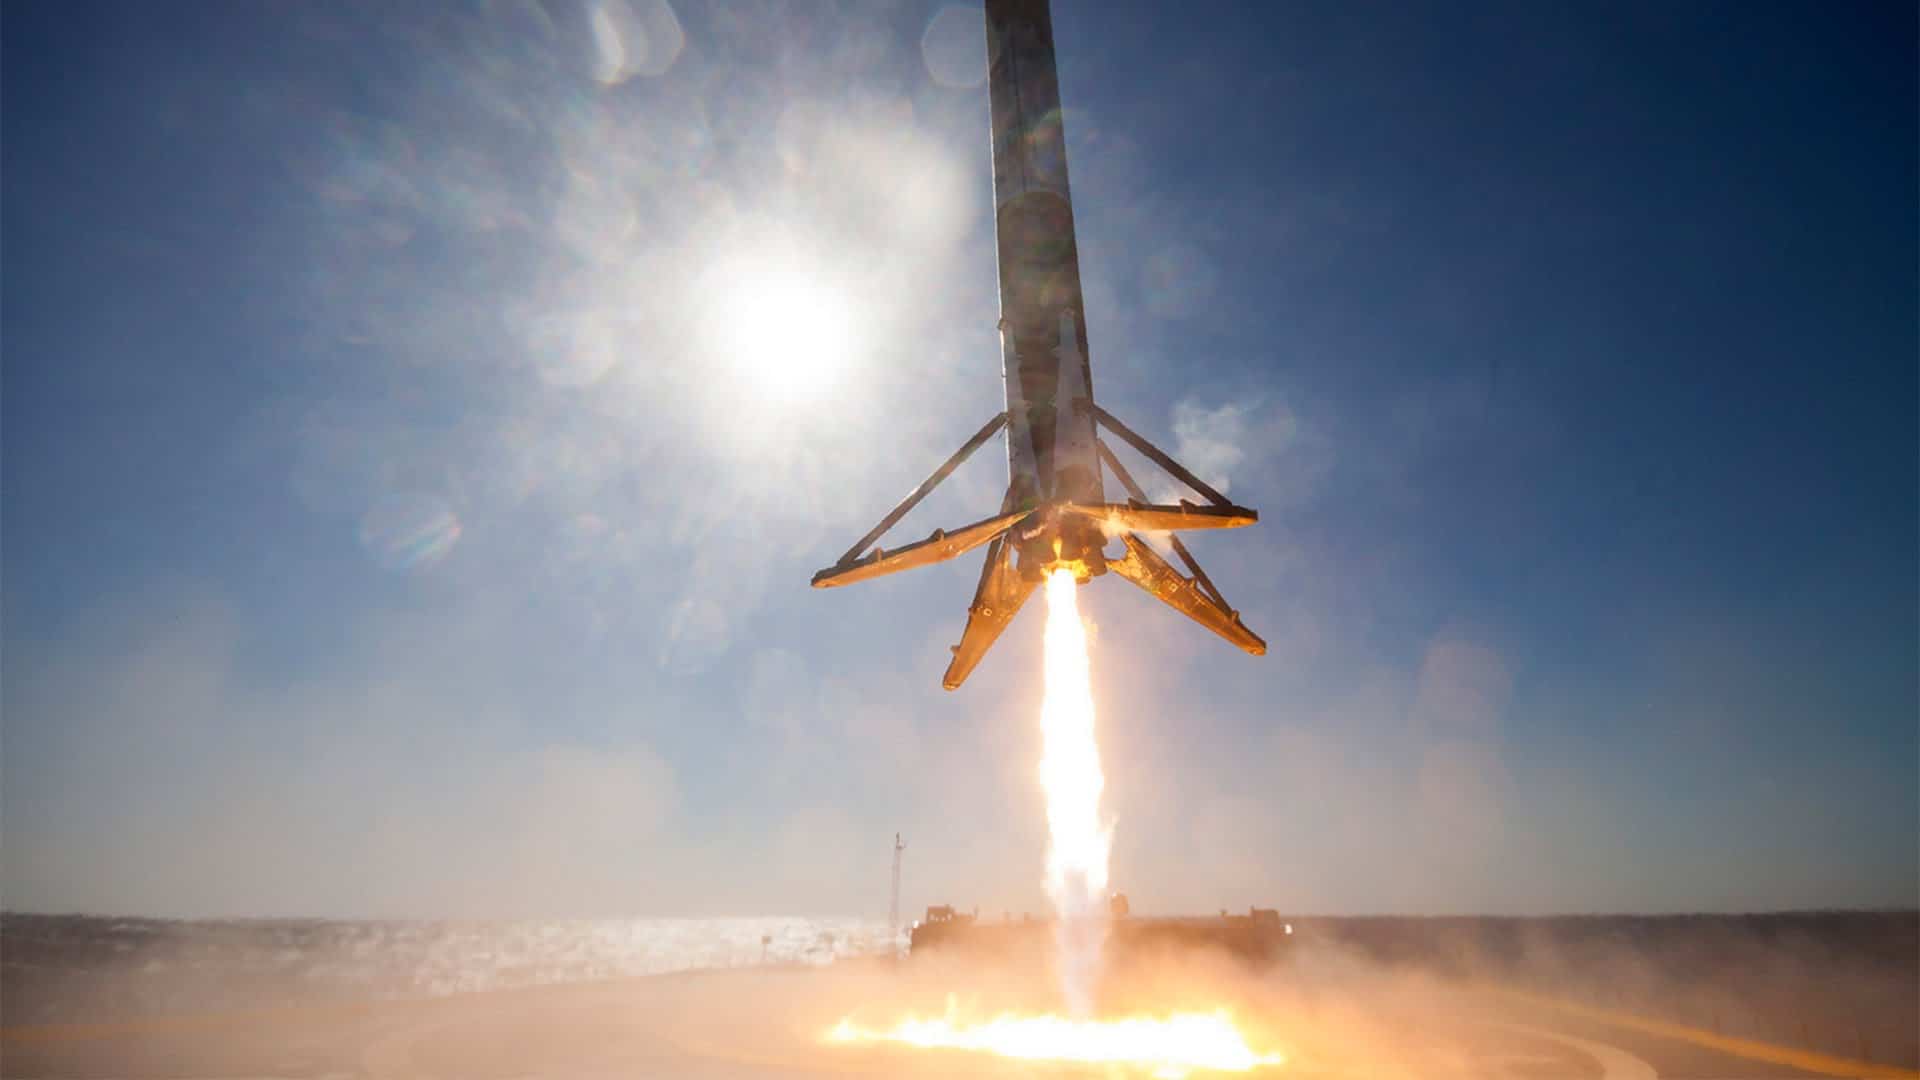 Spektakularny film 360° przedstawiający lądowanie SpaceX